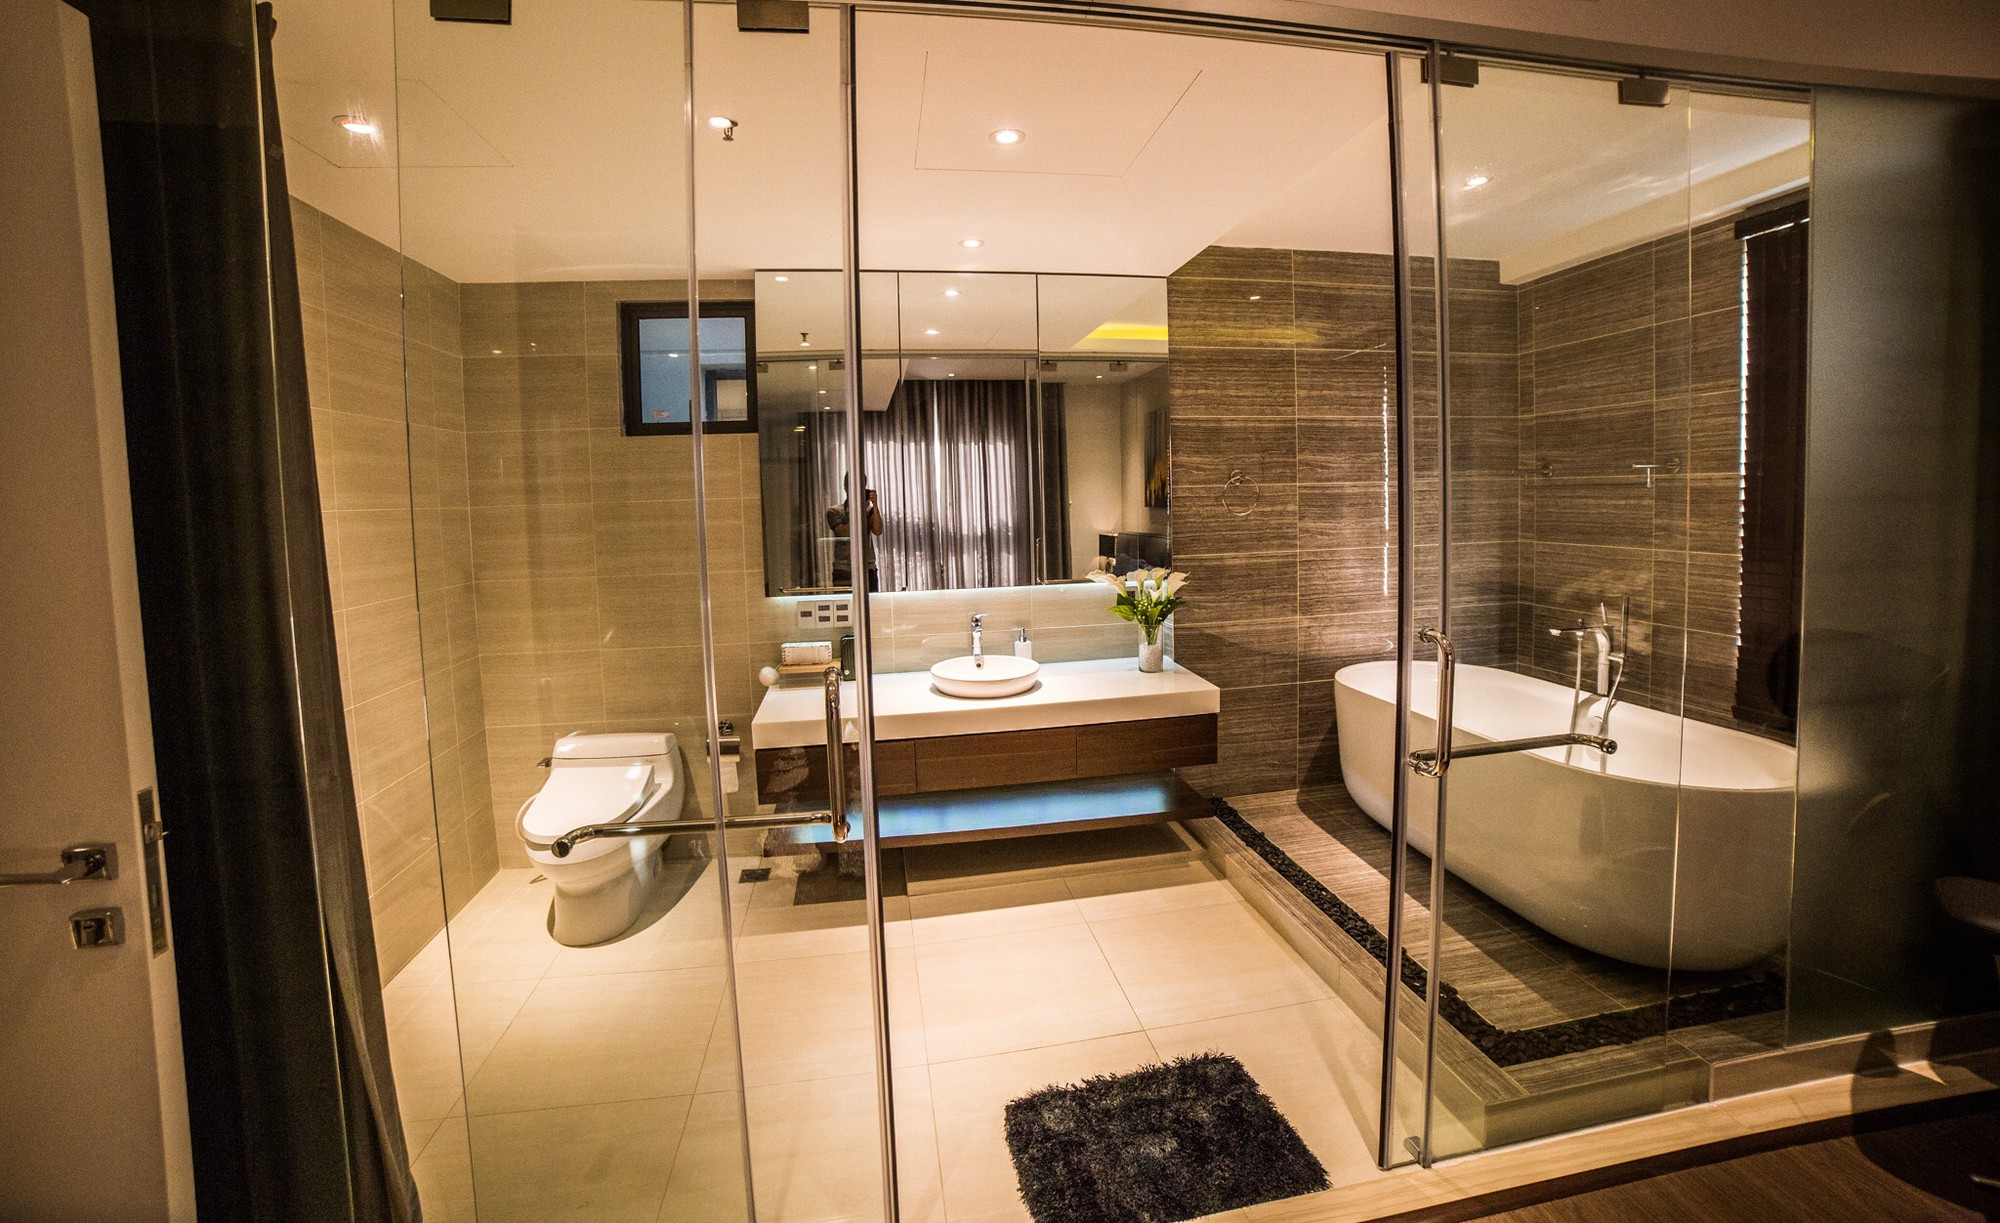 Phòng tắm khách sạn của chúng tôi có các tiện nghi và vật dụng cao cấp, cùng với một thiết kế tinh tế và hiện đại. Tất cả đều được sắp xếp một cách đặc biệt để đáp ứng các nhu cầu của khách hàng, giúp cho trải nghiệm tốt nhất và đáng nhớ nhất.